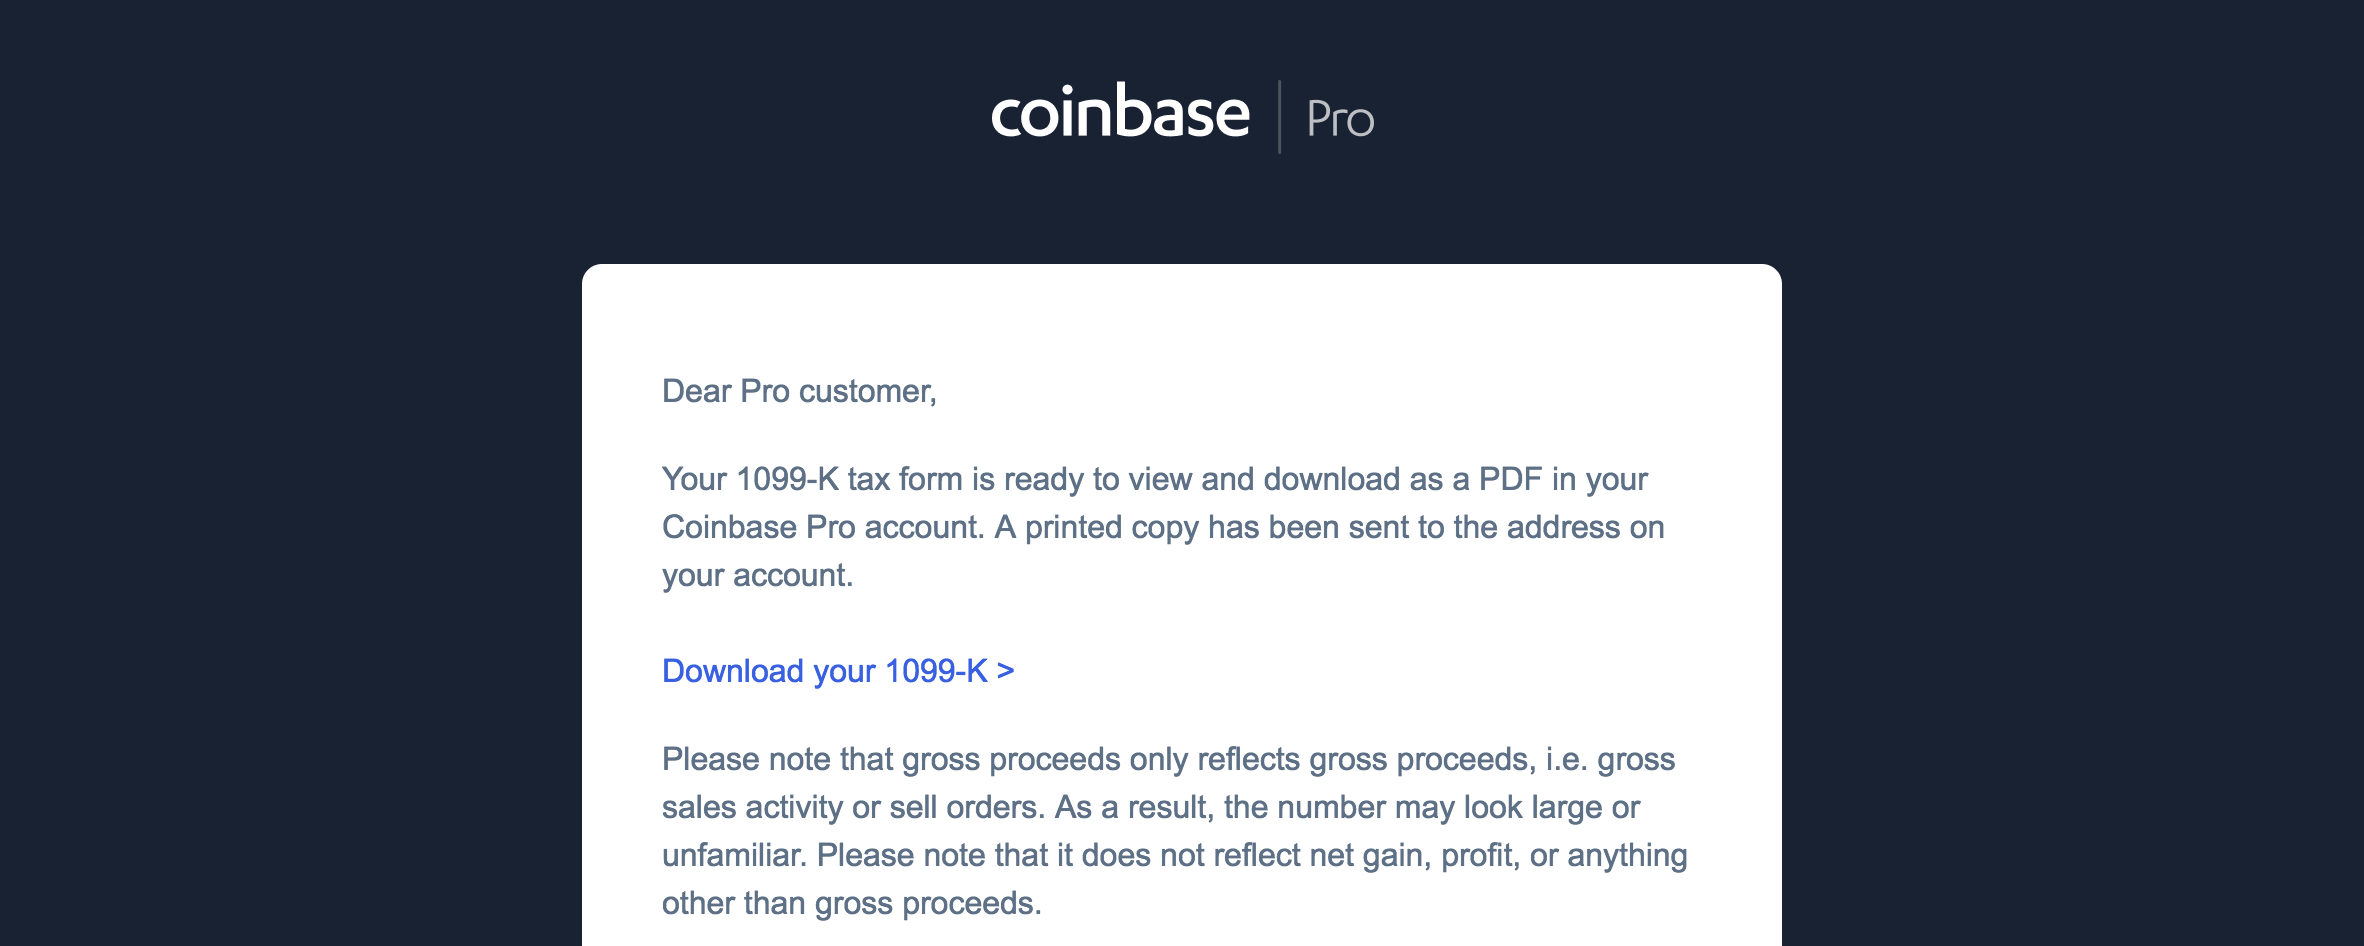 Coinbase Pro sent me a 1099-K. What do I do now ...